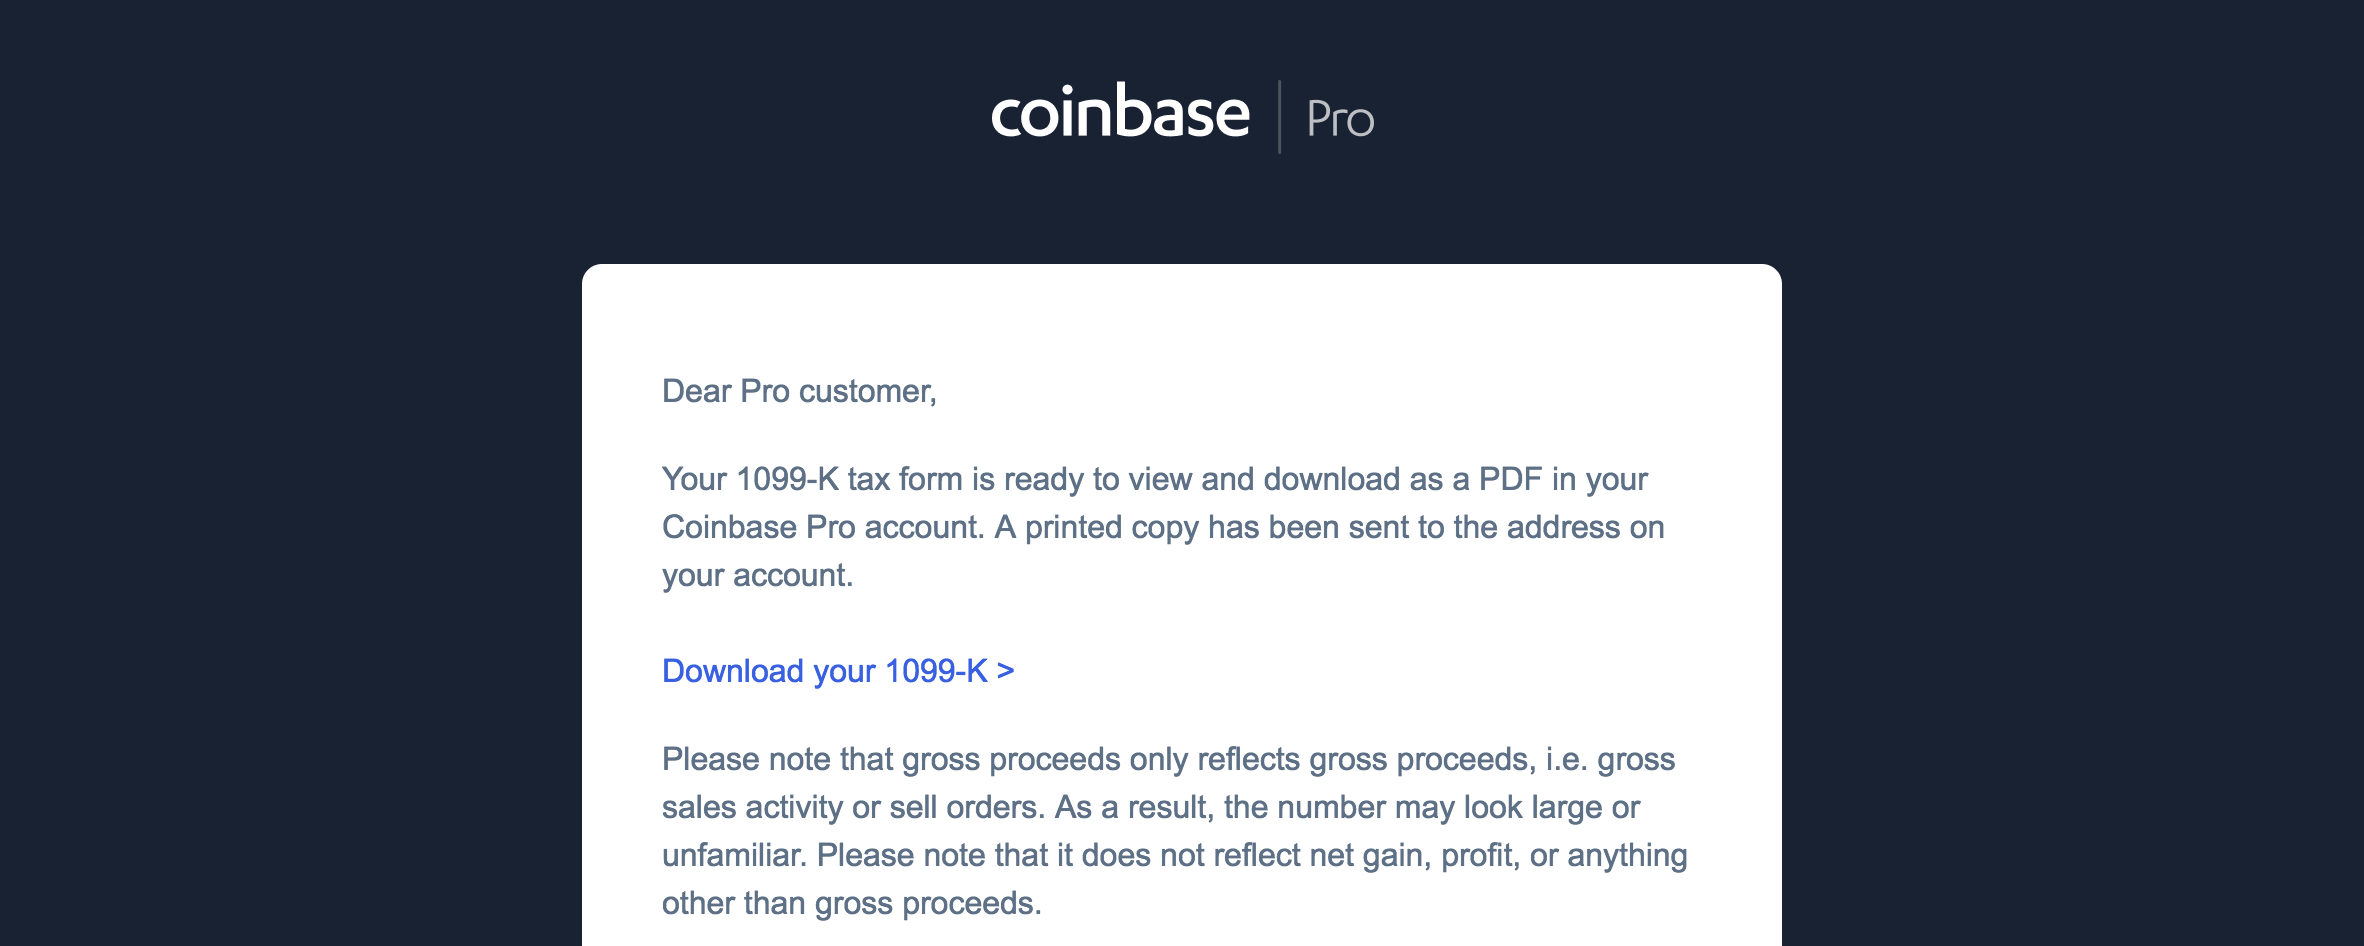 Coinbase Pro sent me a 1099-K. What do I do now ...